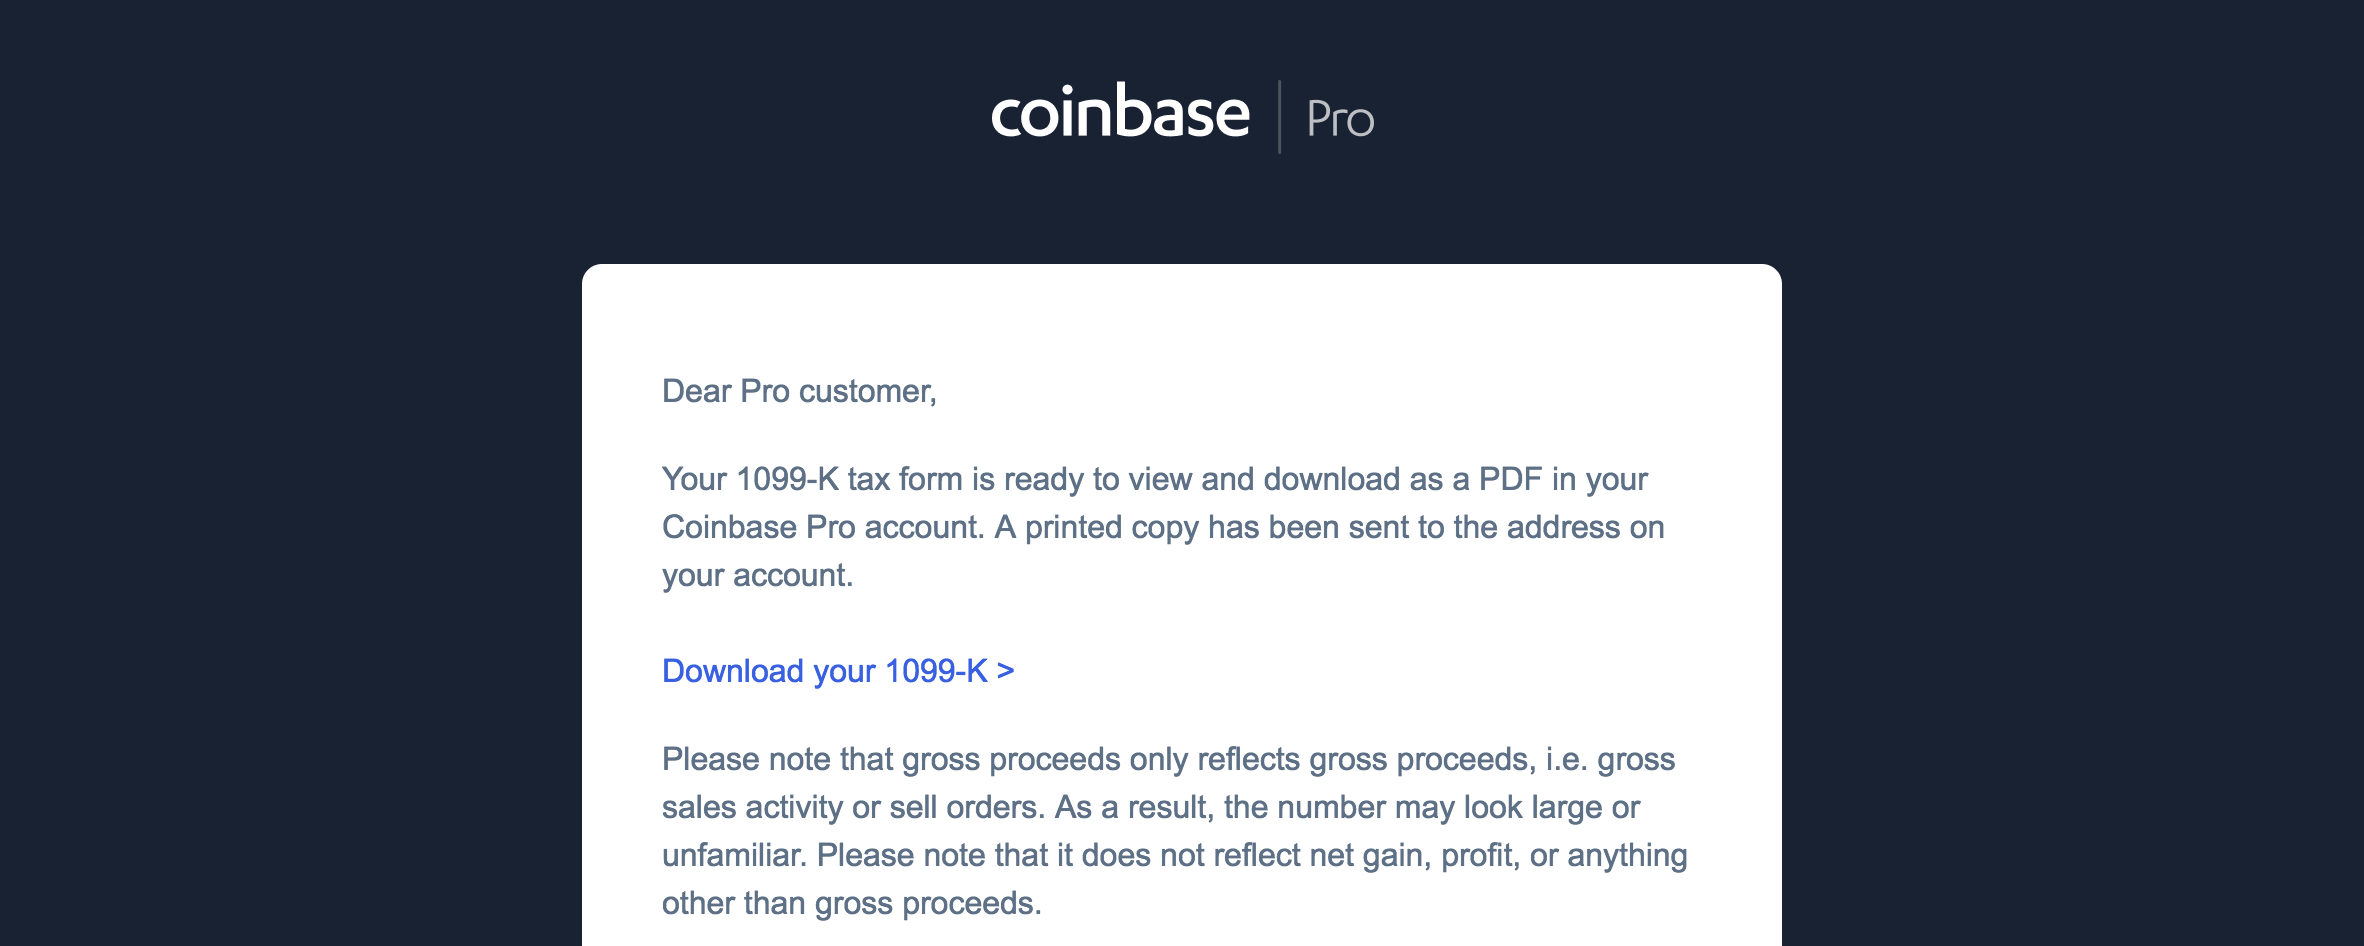 Coinbase Pro sent me a 1099-K. What do I do now ...